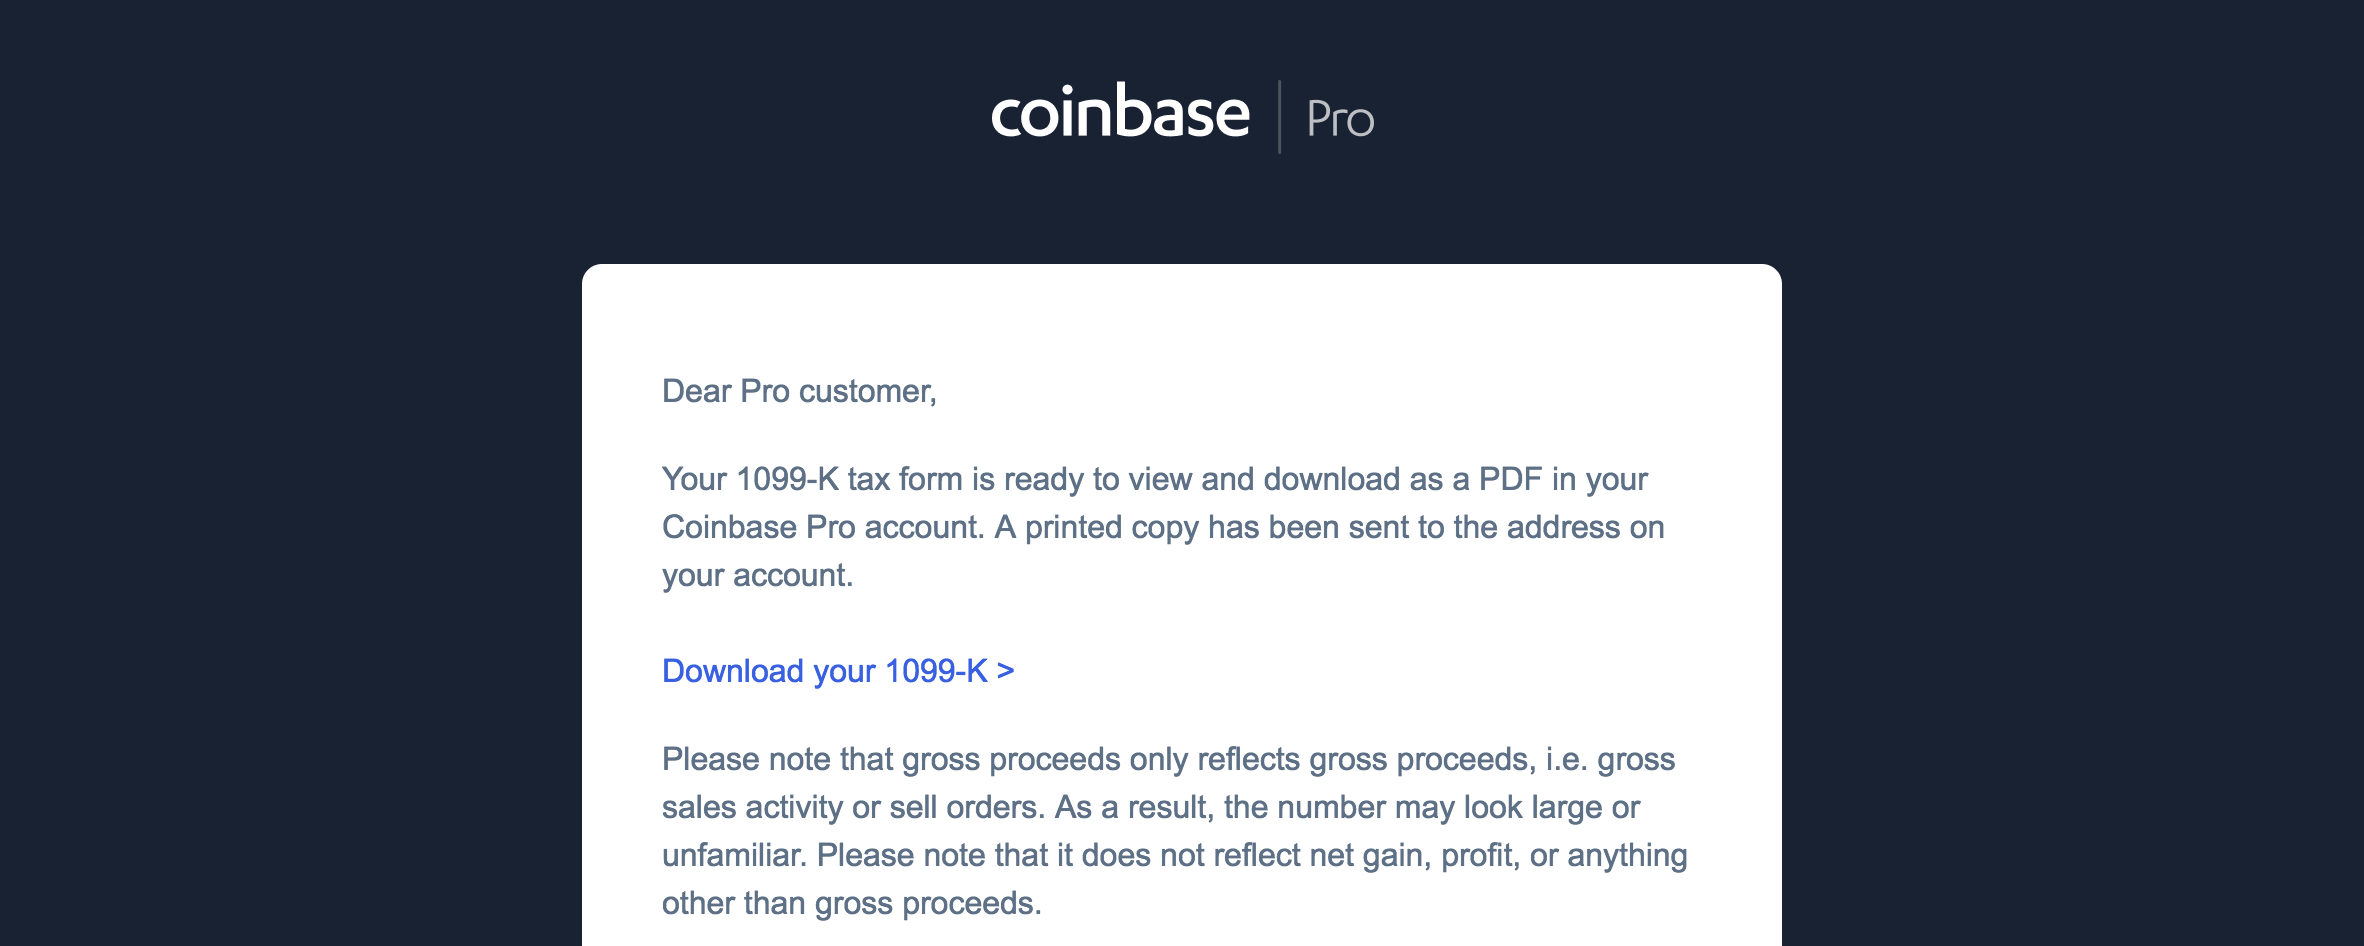 Coinbase Pro sent me a 1099-K. What do I do now ...